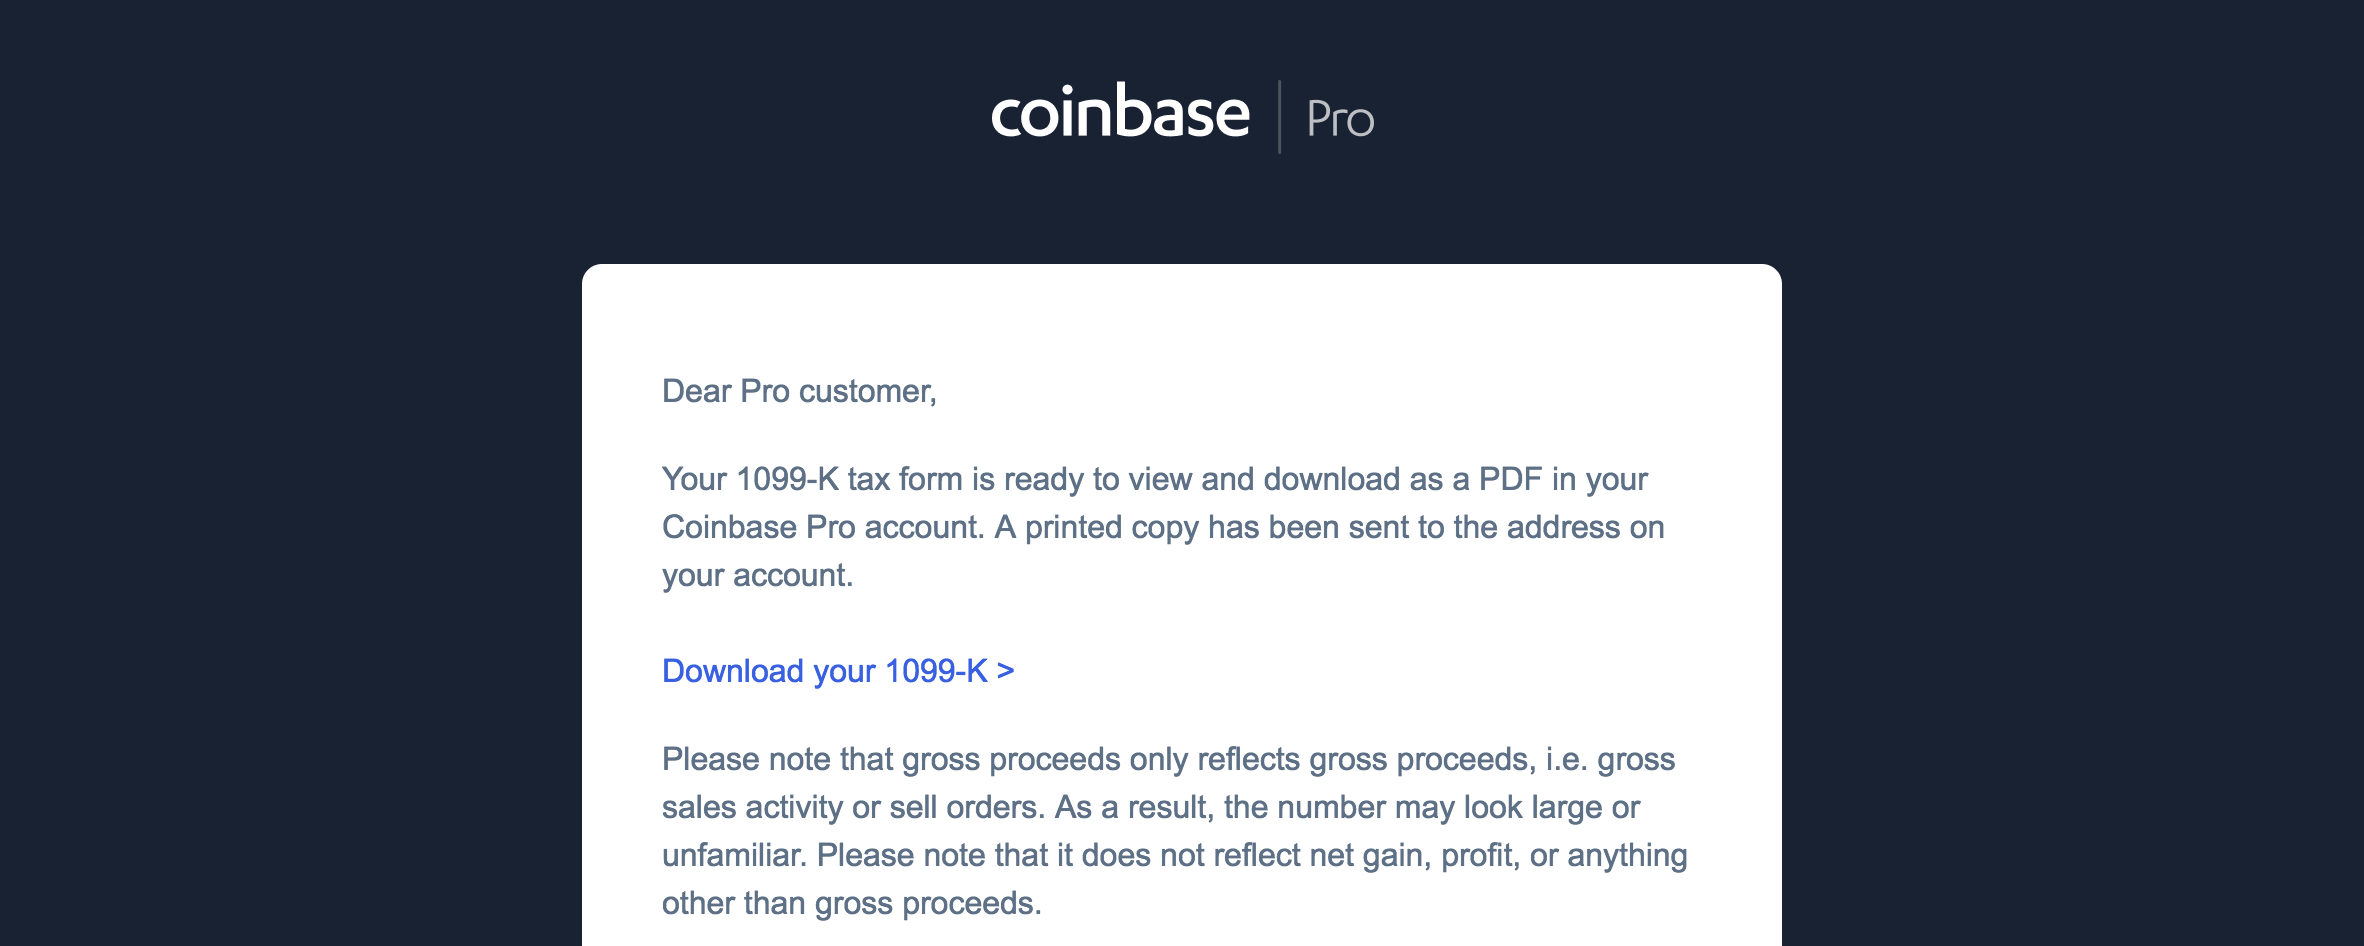 Coinbase Pro sent me a 1099-K. What do I do now ...